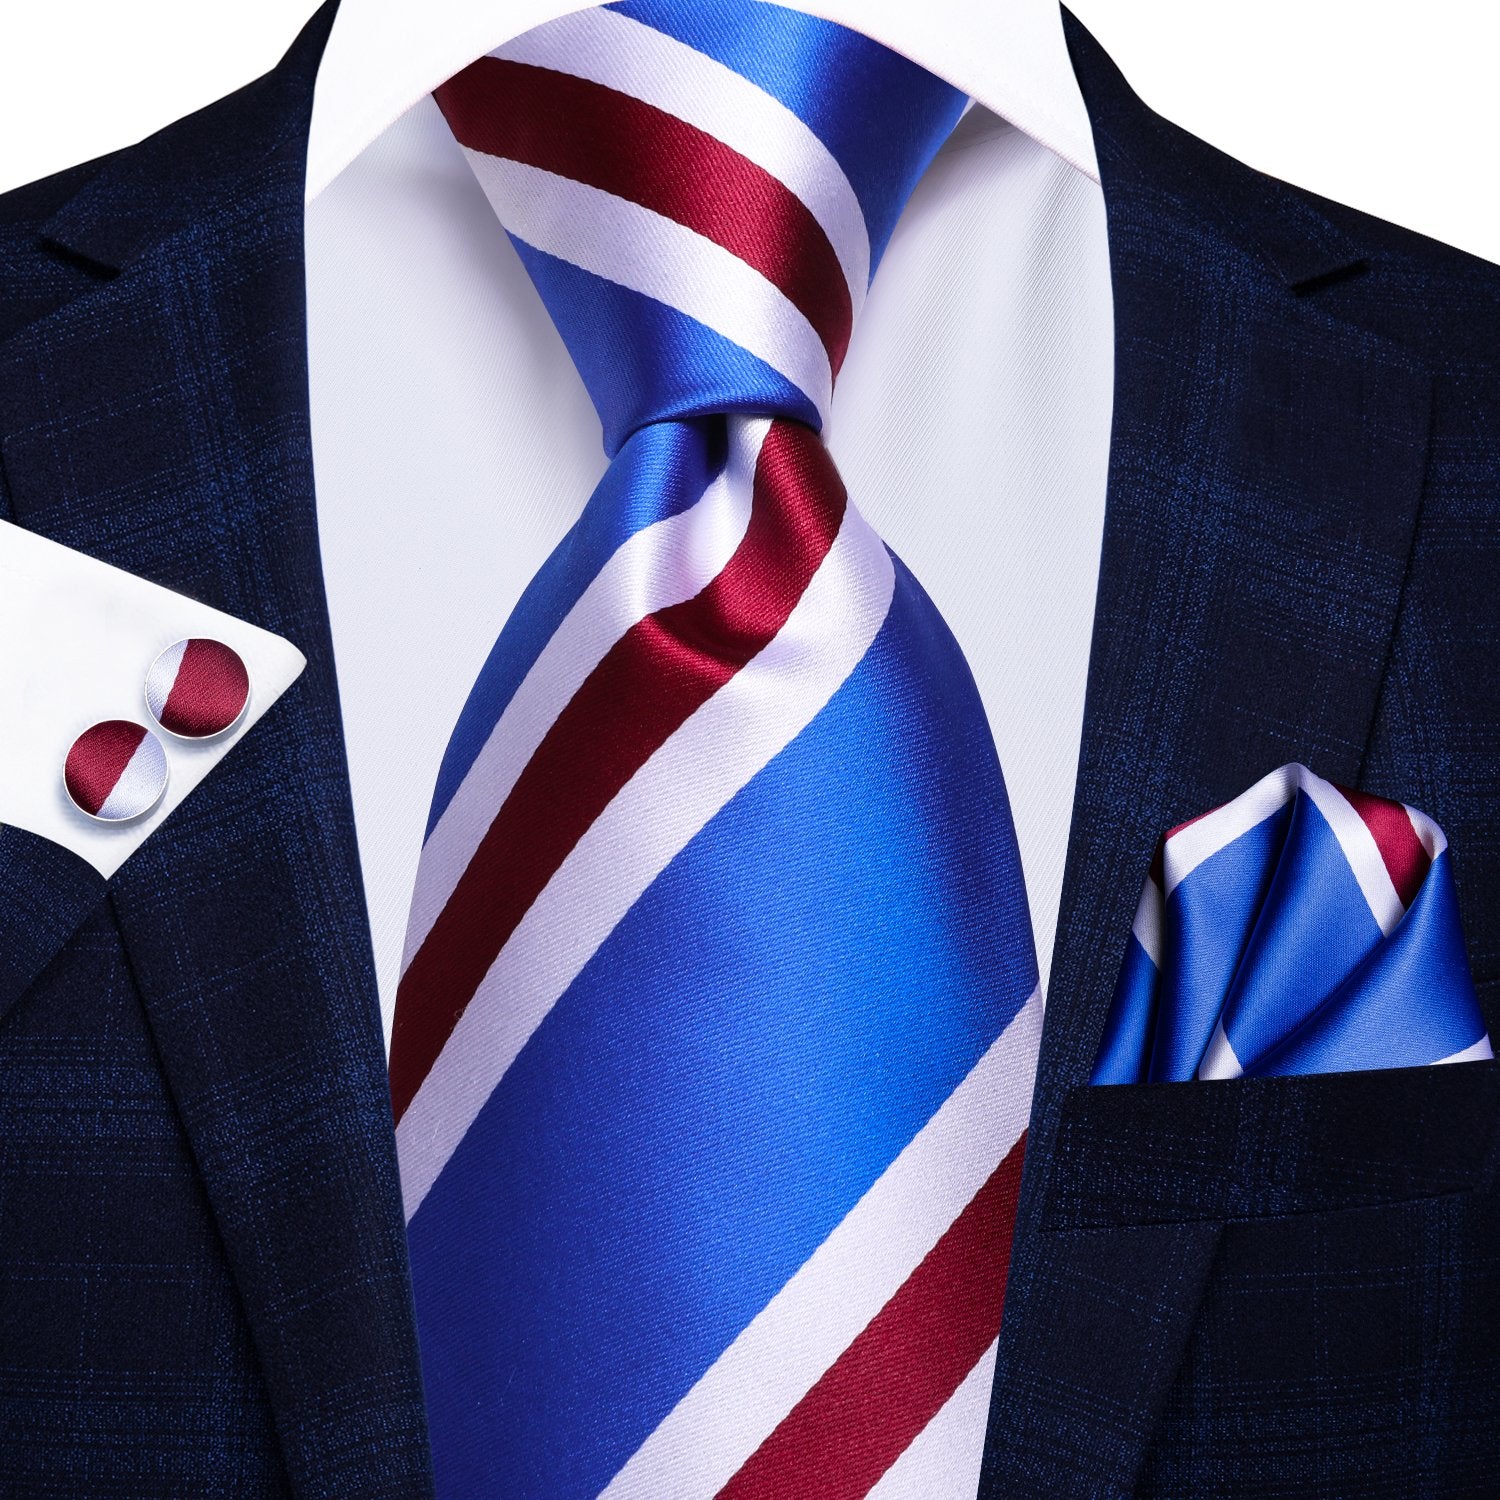 Blue Red White Tie Handkerchief Cufflinks Set with Wedding Brooch